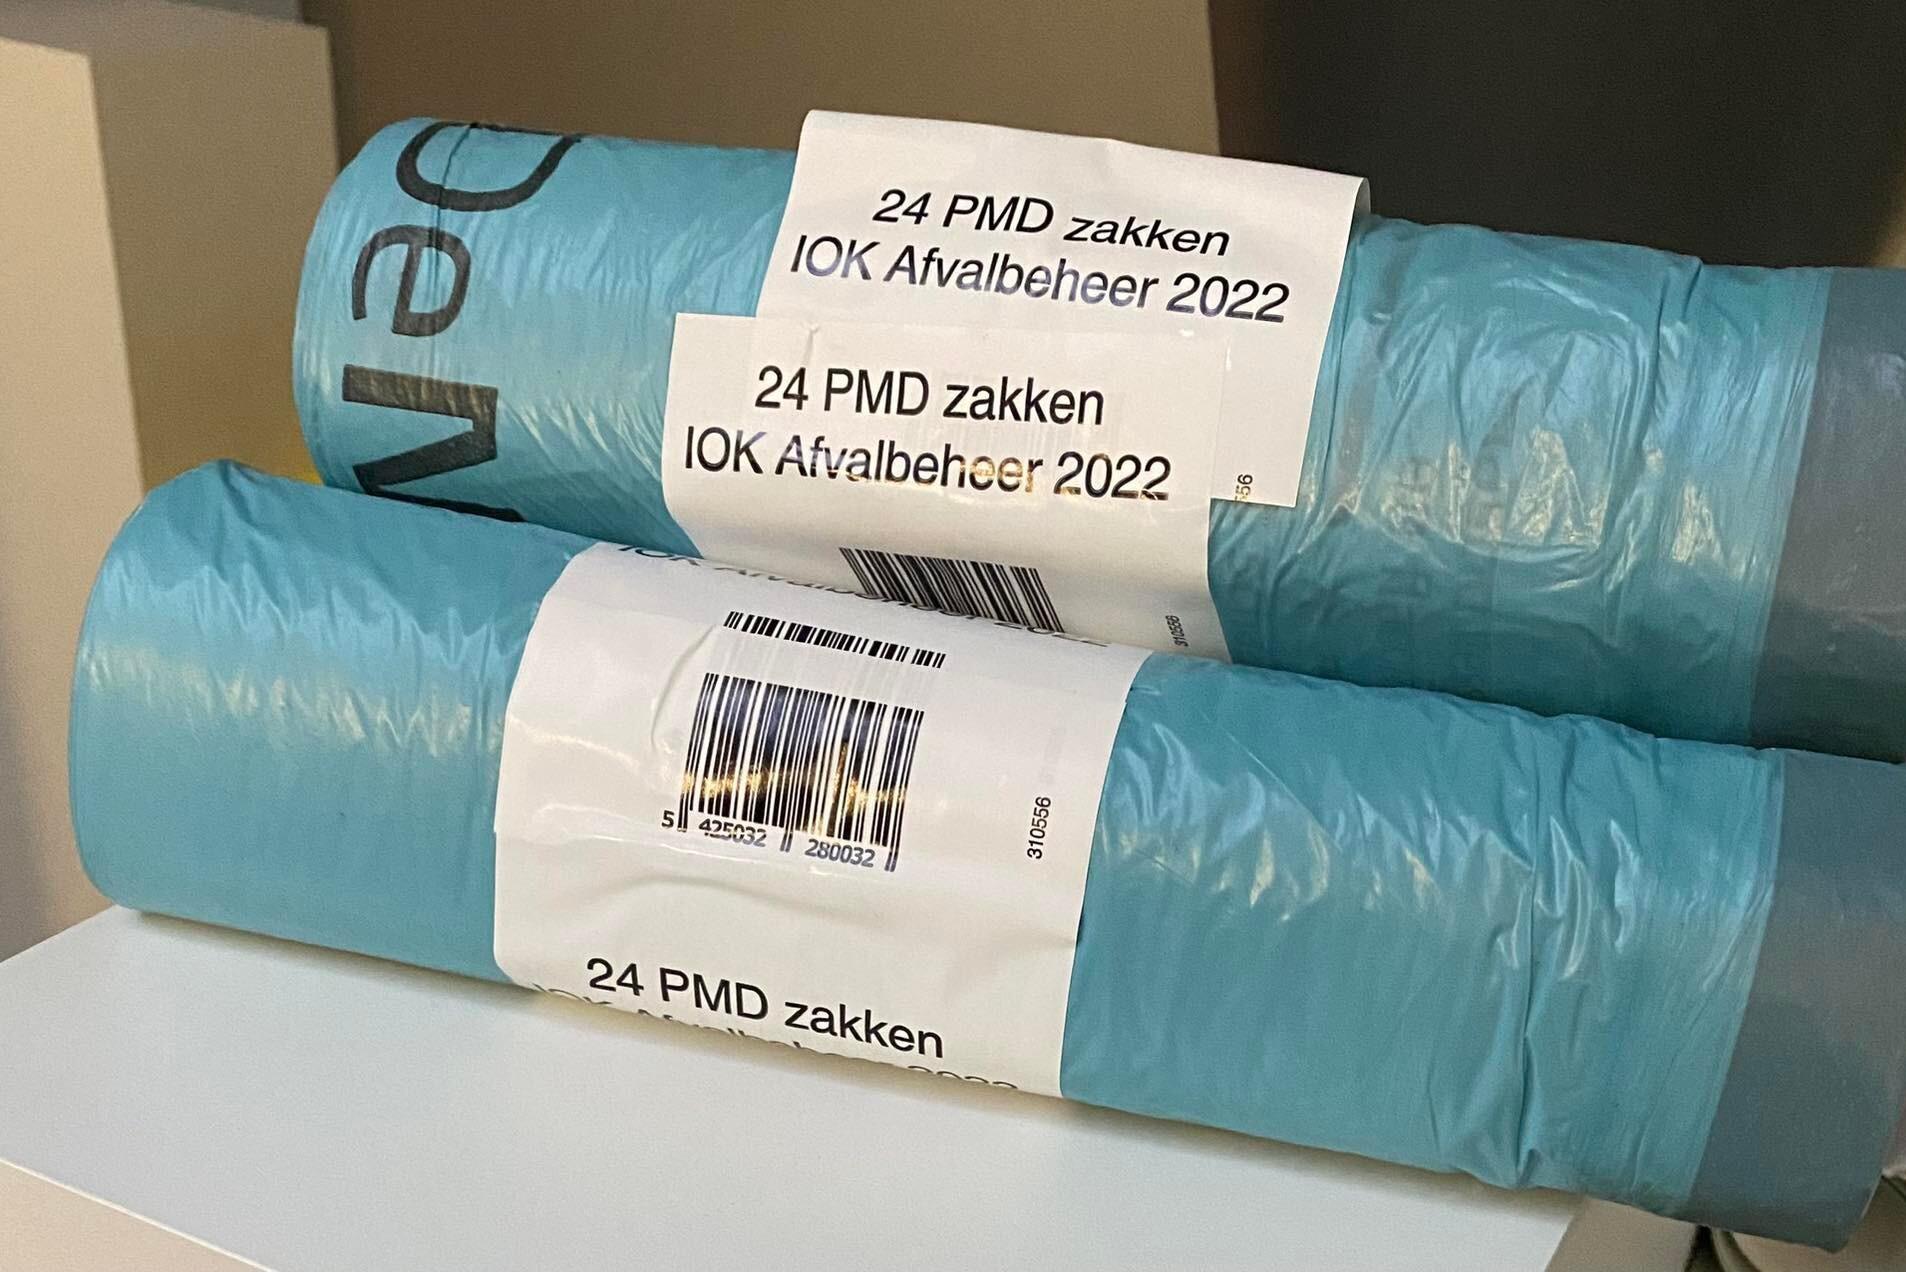 Pmd-zakken ook te koop in supermarkt: gemeente sluit met Delhaize en Okay | Het Nieuwsblad Mobile